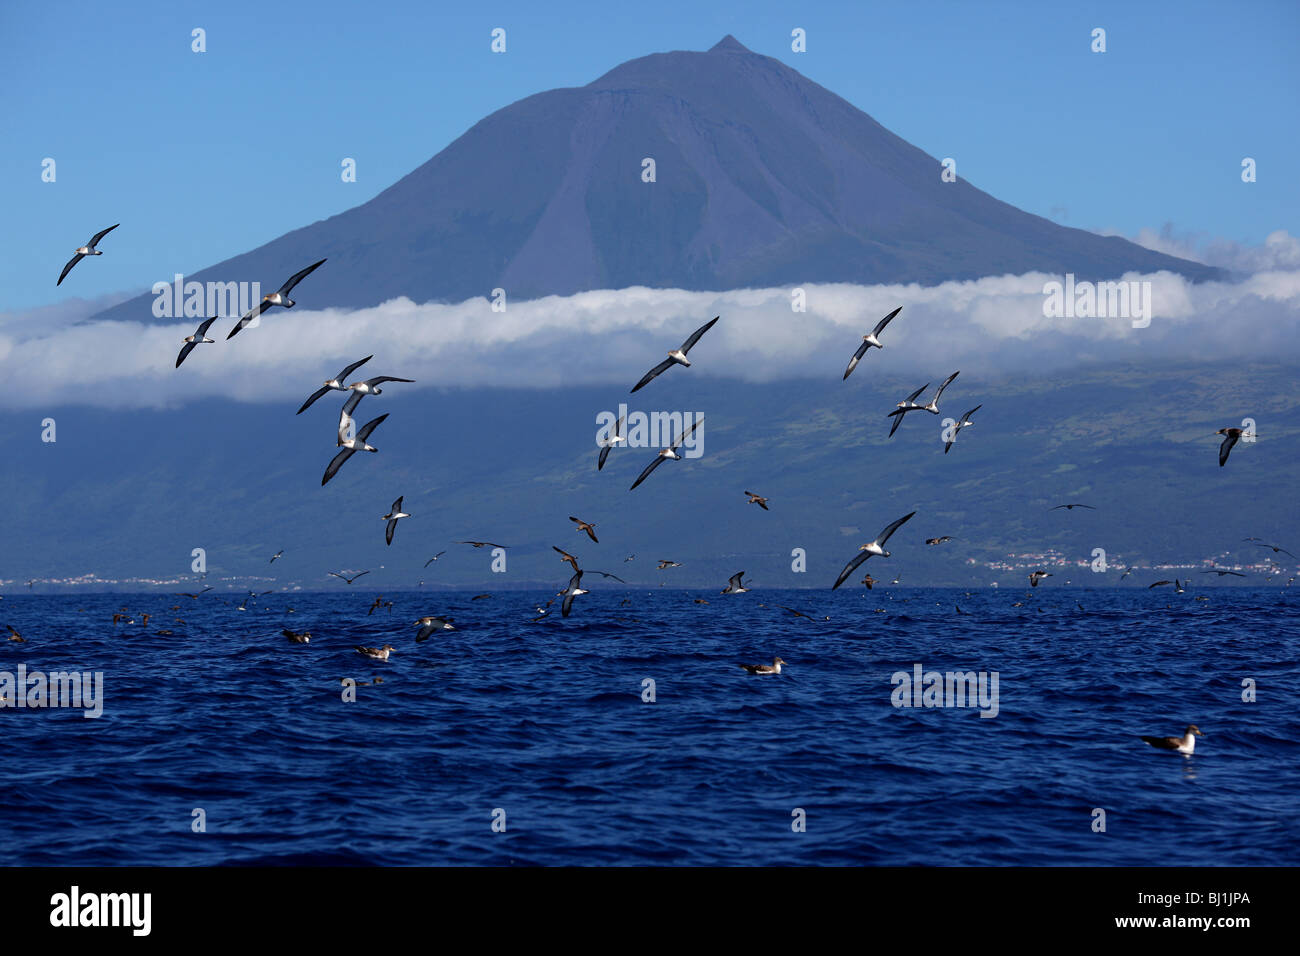 Puffin cendré avec formation de vol la montagne Pico dans le fond. L'île de Pico, Açores, Portugal Banque D'Images